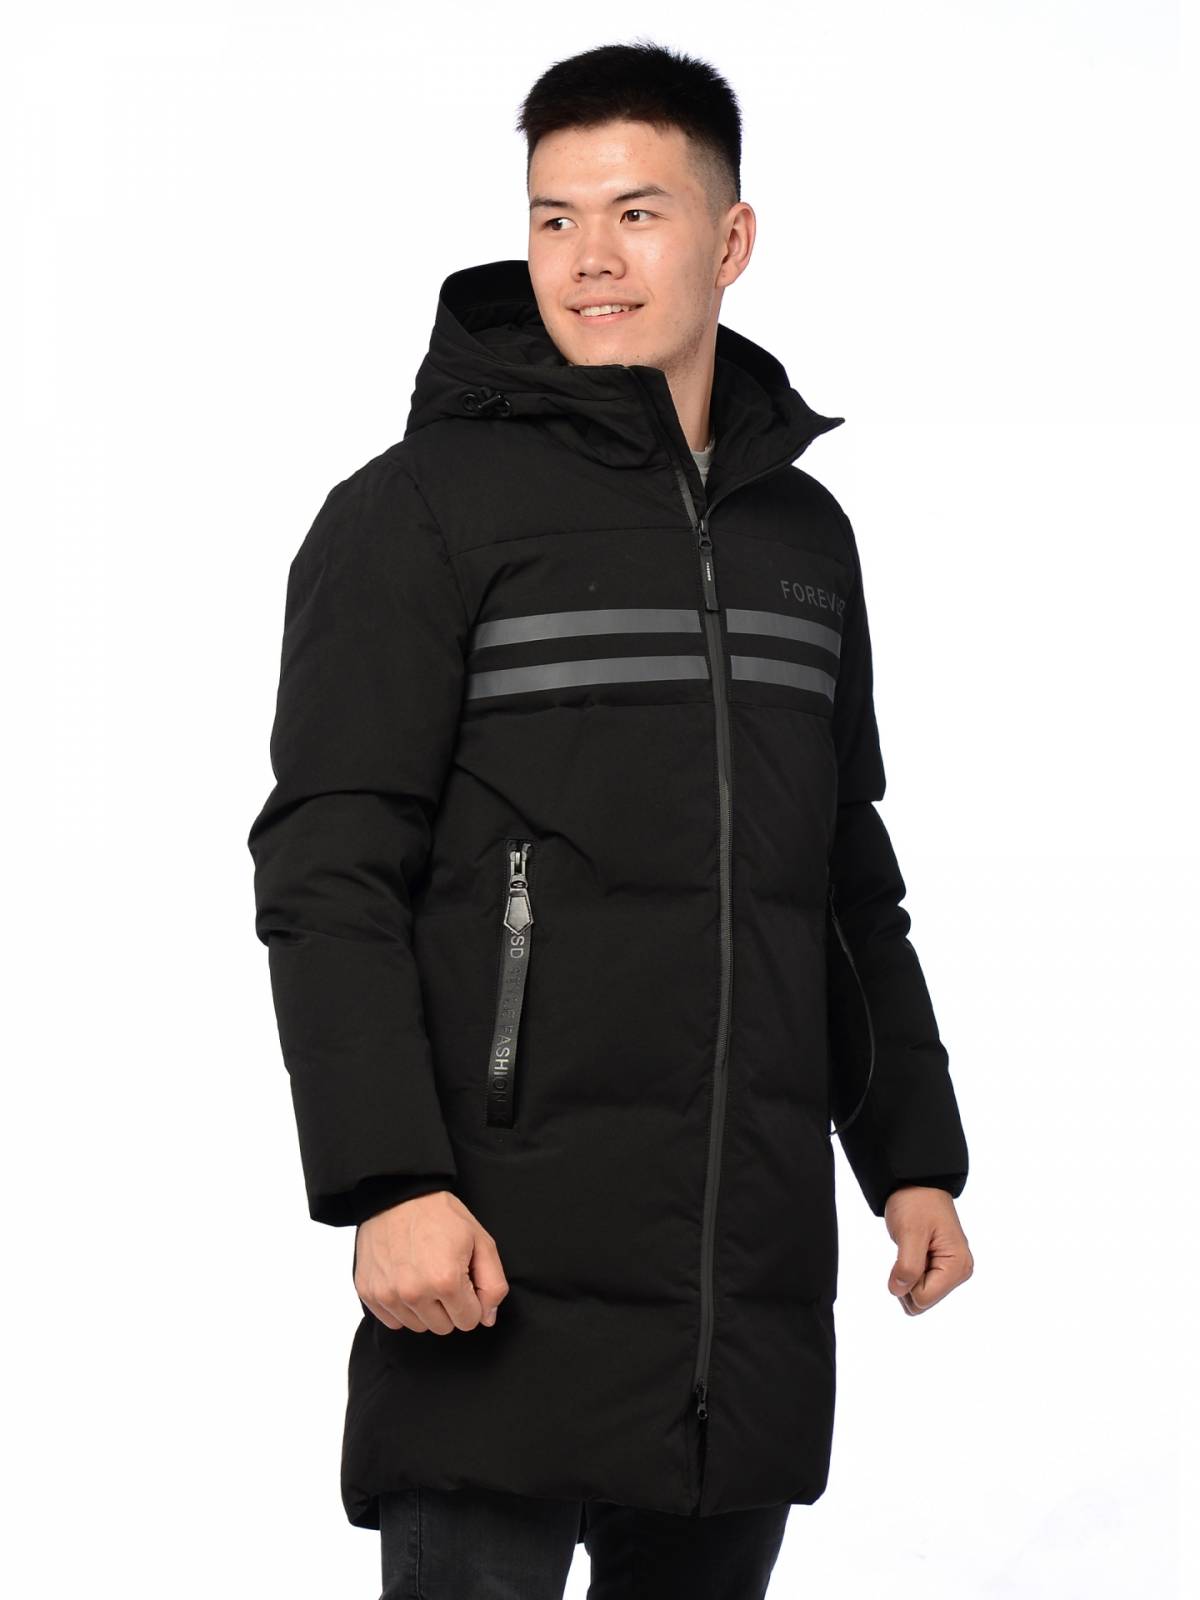 Зимняя куртка мужская Kasadun 3880 черная 54 RU